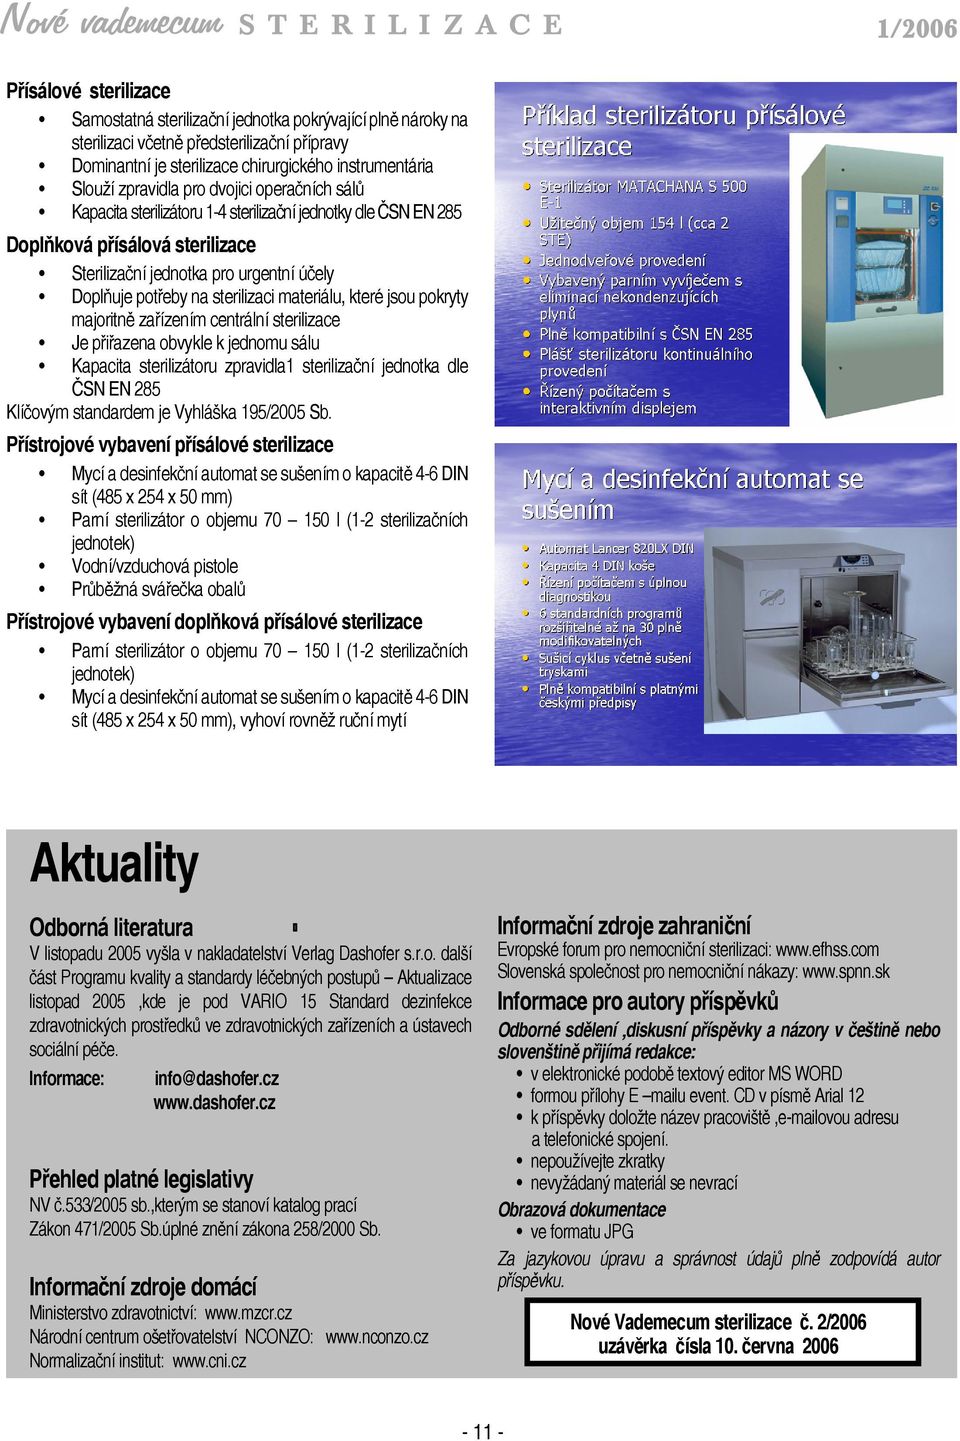 materiálu, které jsou pokryty majoritně zařízením centrální sterilizace Je přiřazena obvykle k jednomu sálu Kapacita sterilizátoru zpravidla1 sterilizační jednotka dle ČSN EN 285 Klíčovým standardem